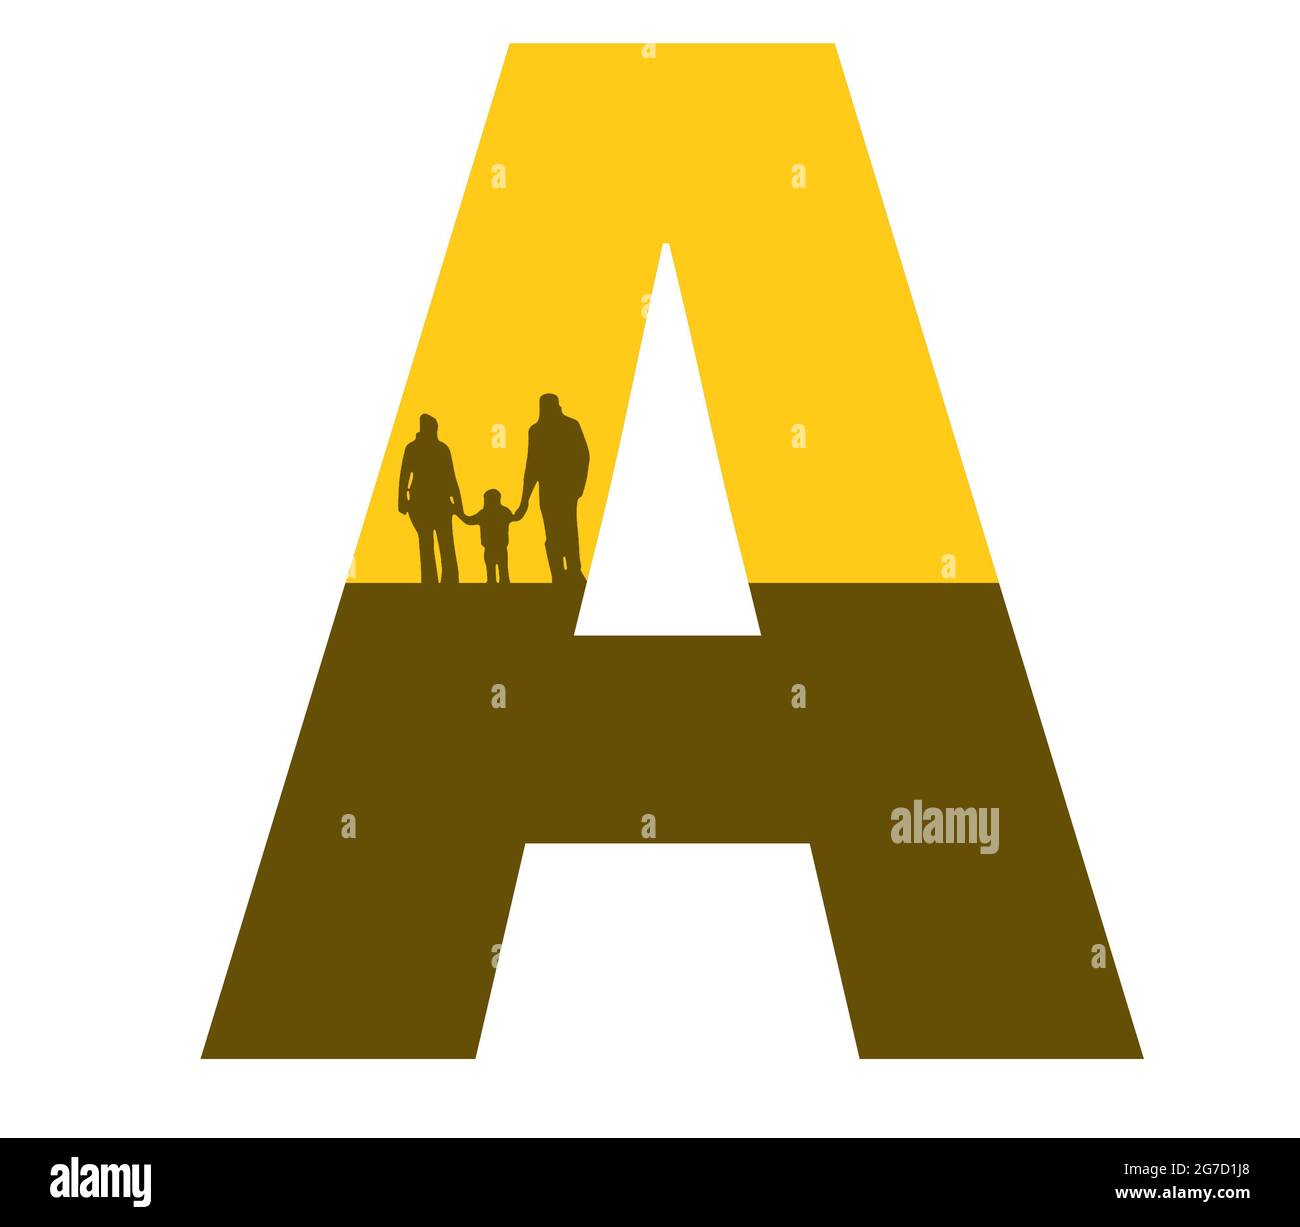 Lettre A de l'alphabet avec une silhouette de famille, de père, de mère et d'enfant, de couleur ocre et marron Banque D'Images